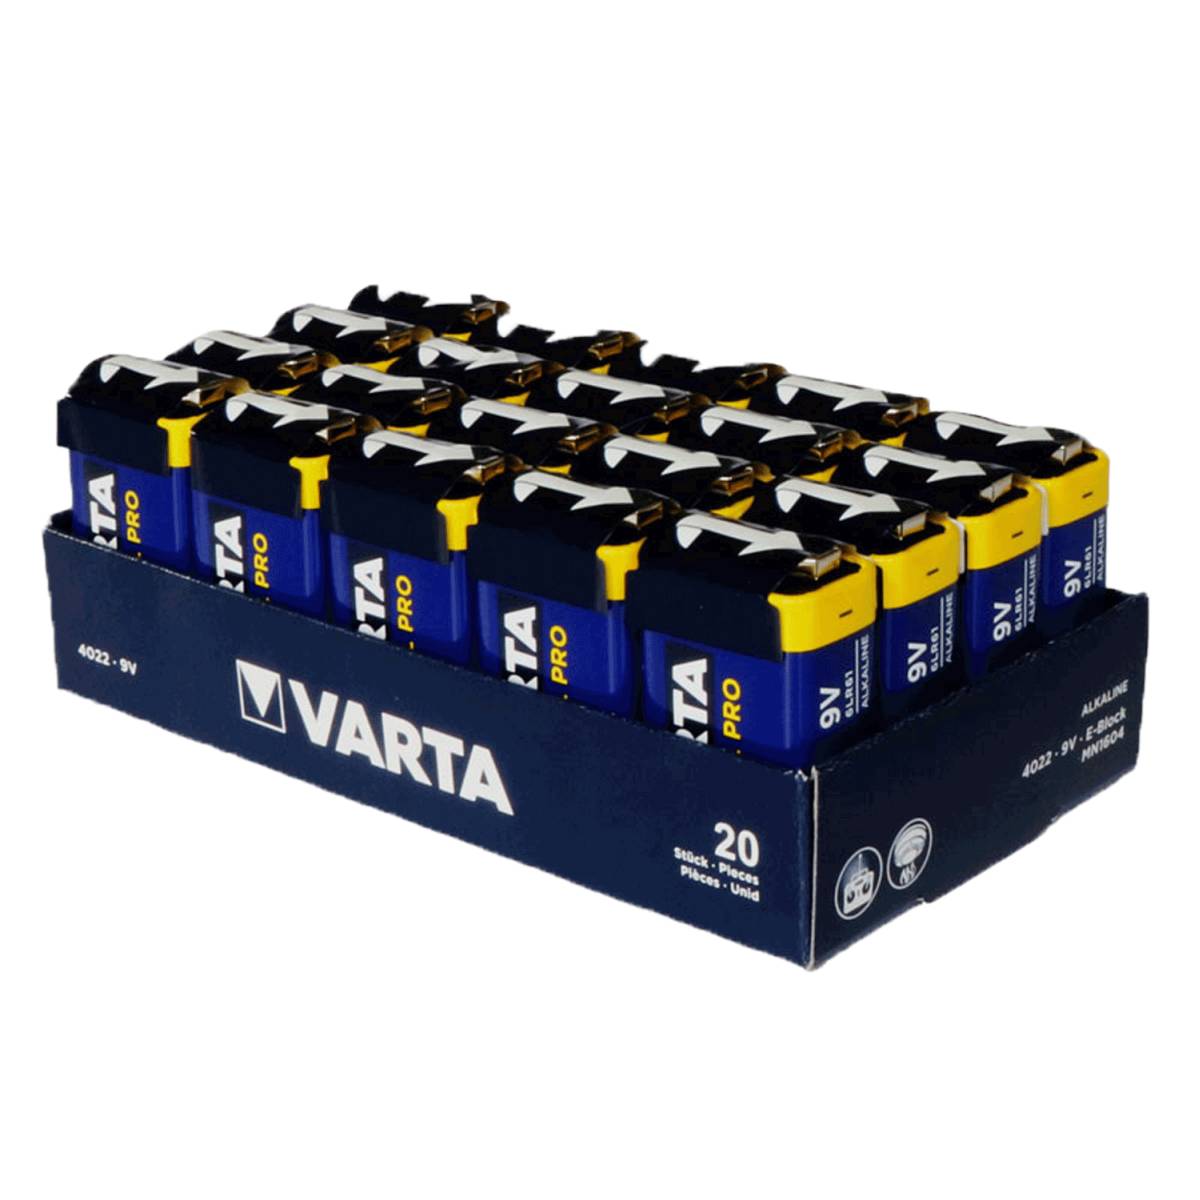 Varta Industrial Pro 9V Block Battery 4022 20 pezzi (Vassoio)